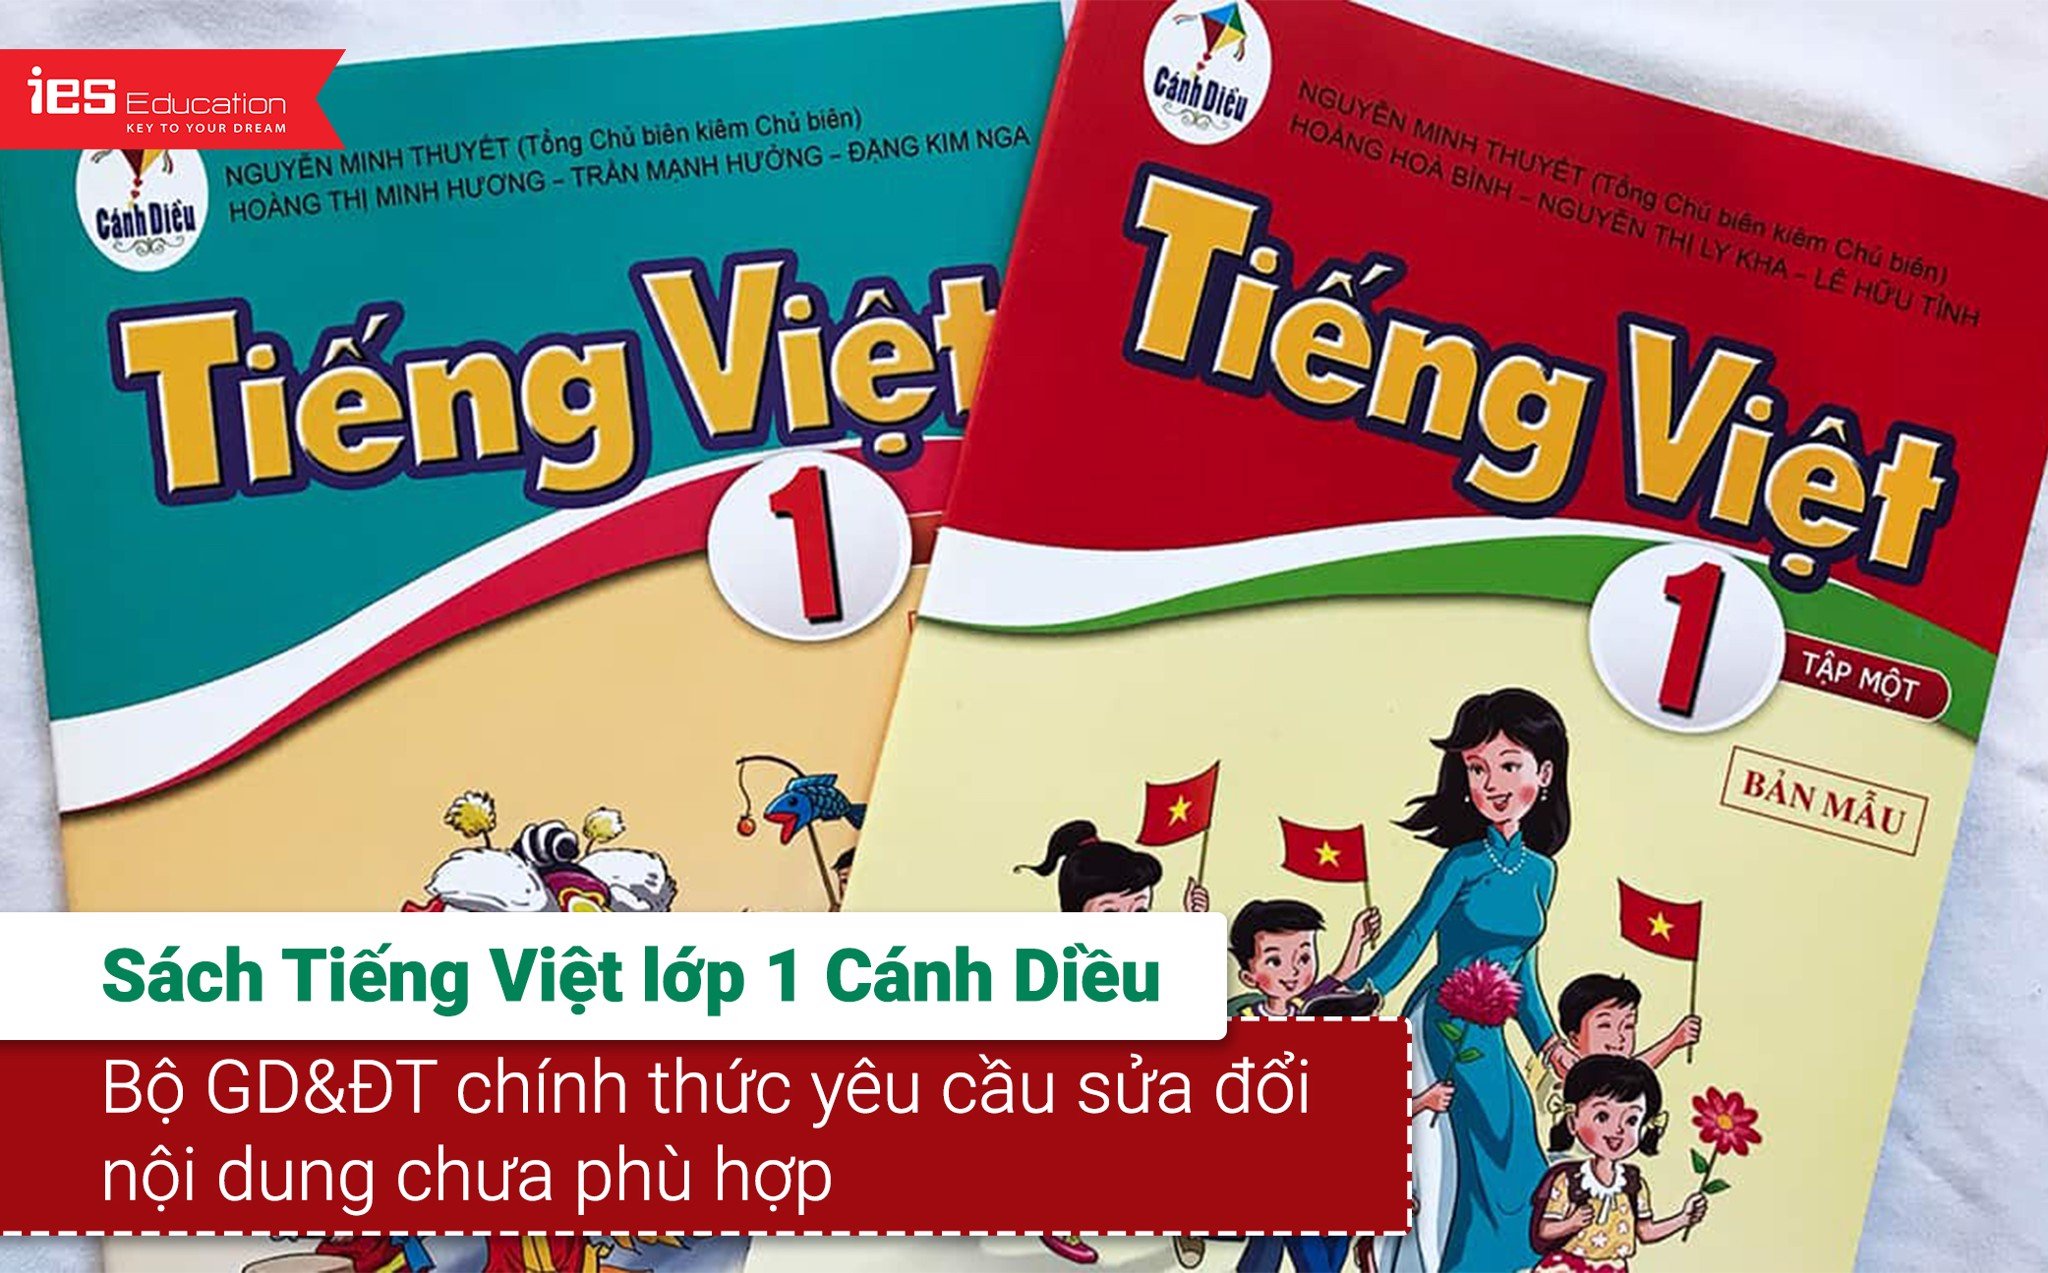 Sách Tiếng Việt lớp 1 - IES Education